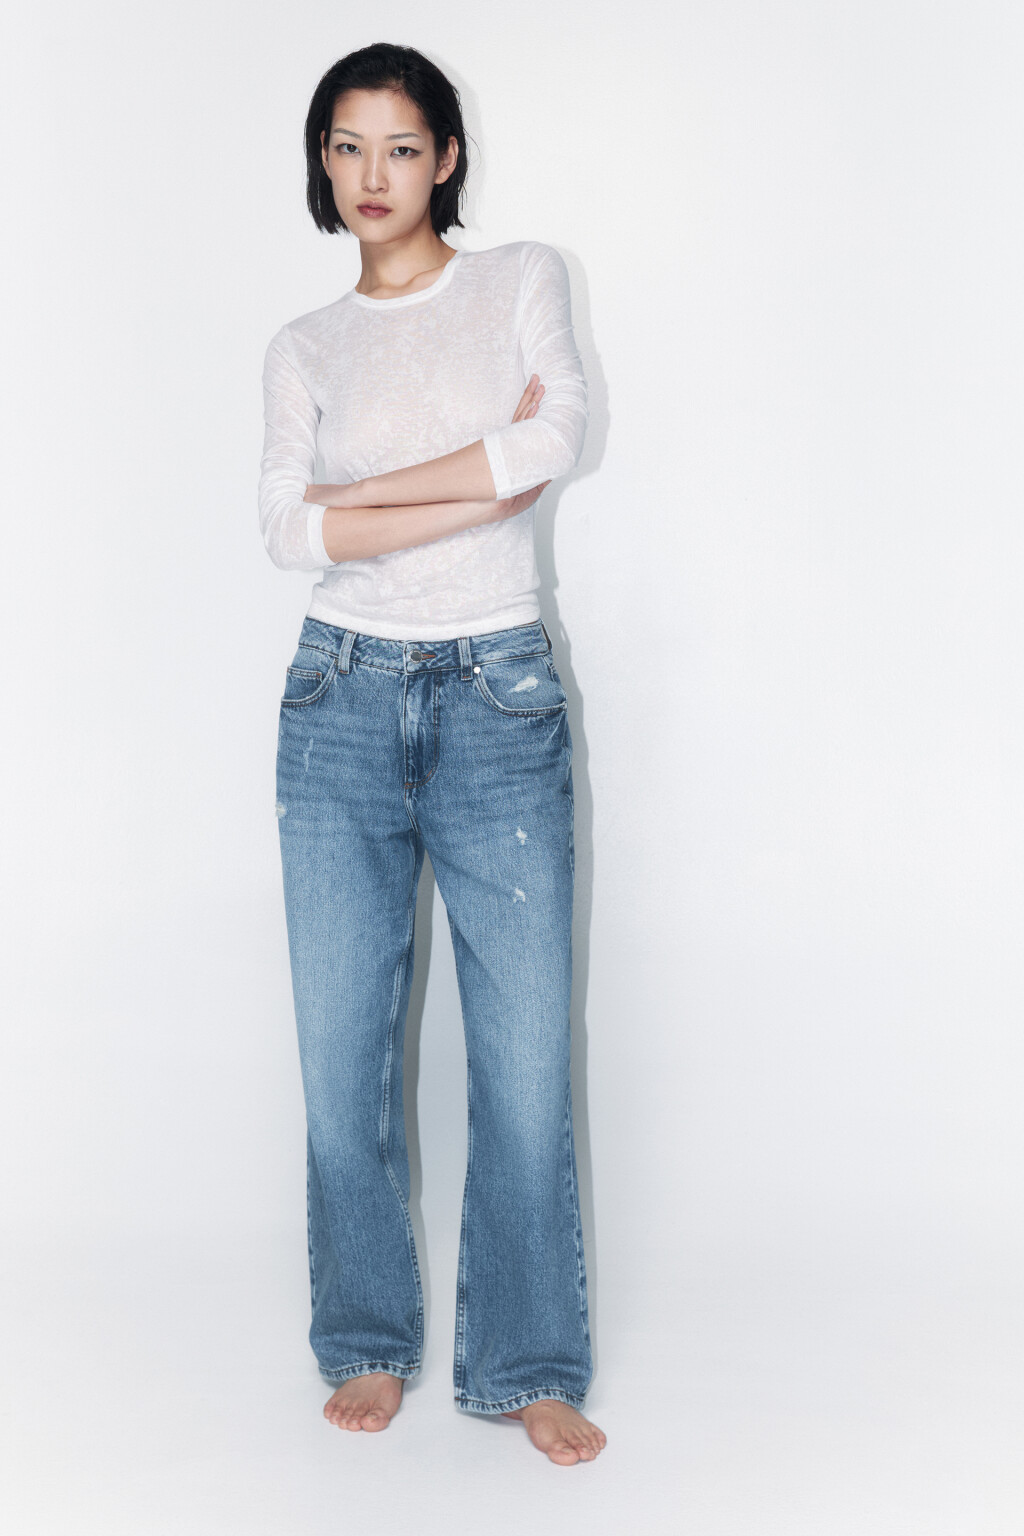 Купить джинсы женские недорого в интернет магазине internat-mednogorsk.ru